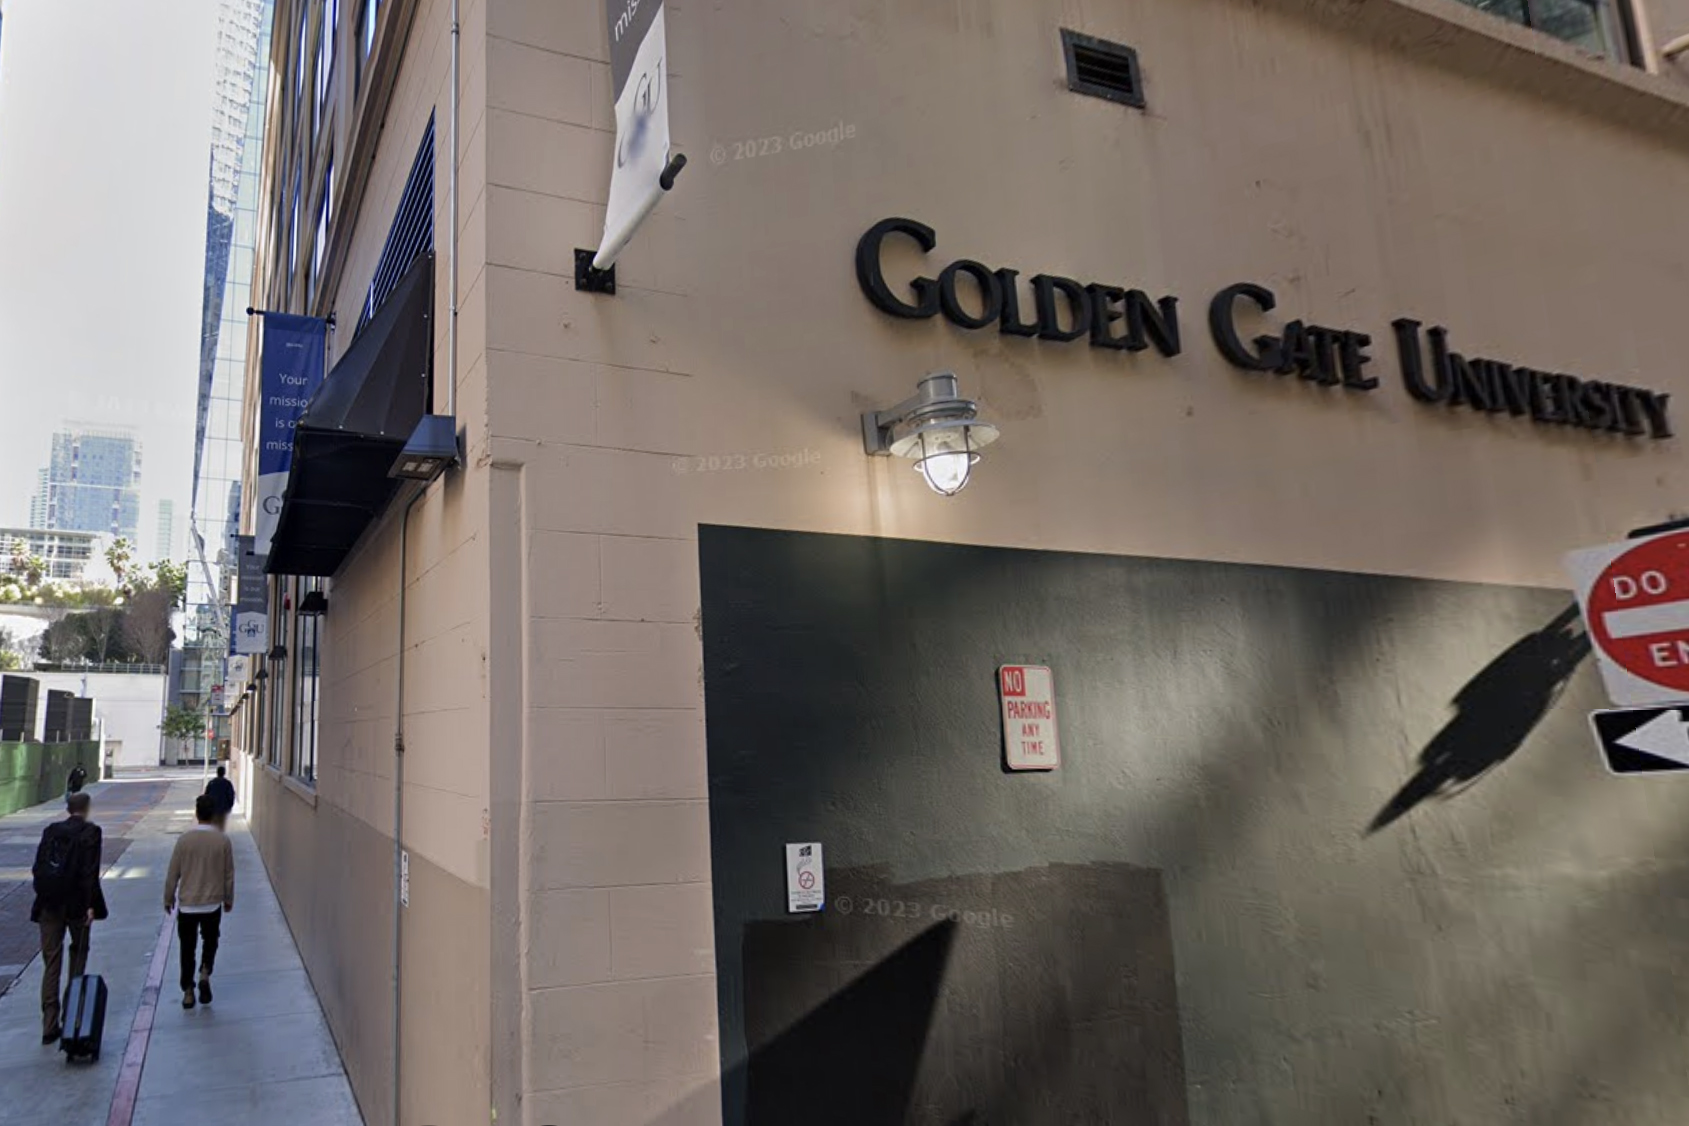 Golden Gate University Law School Faces Bankruptcy, Closure